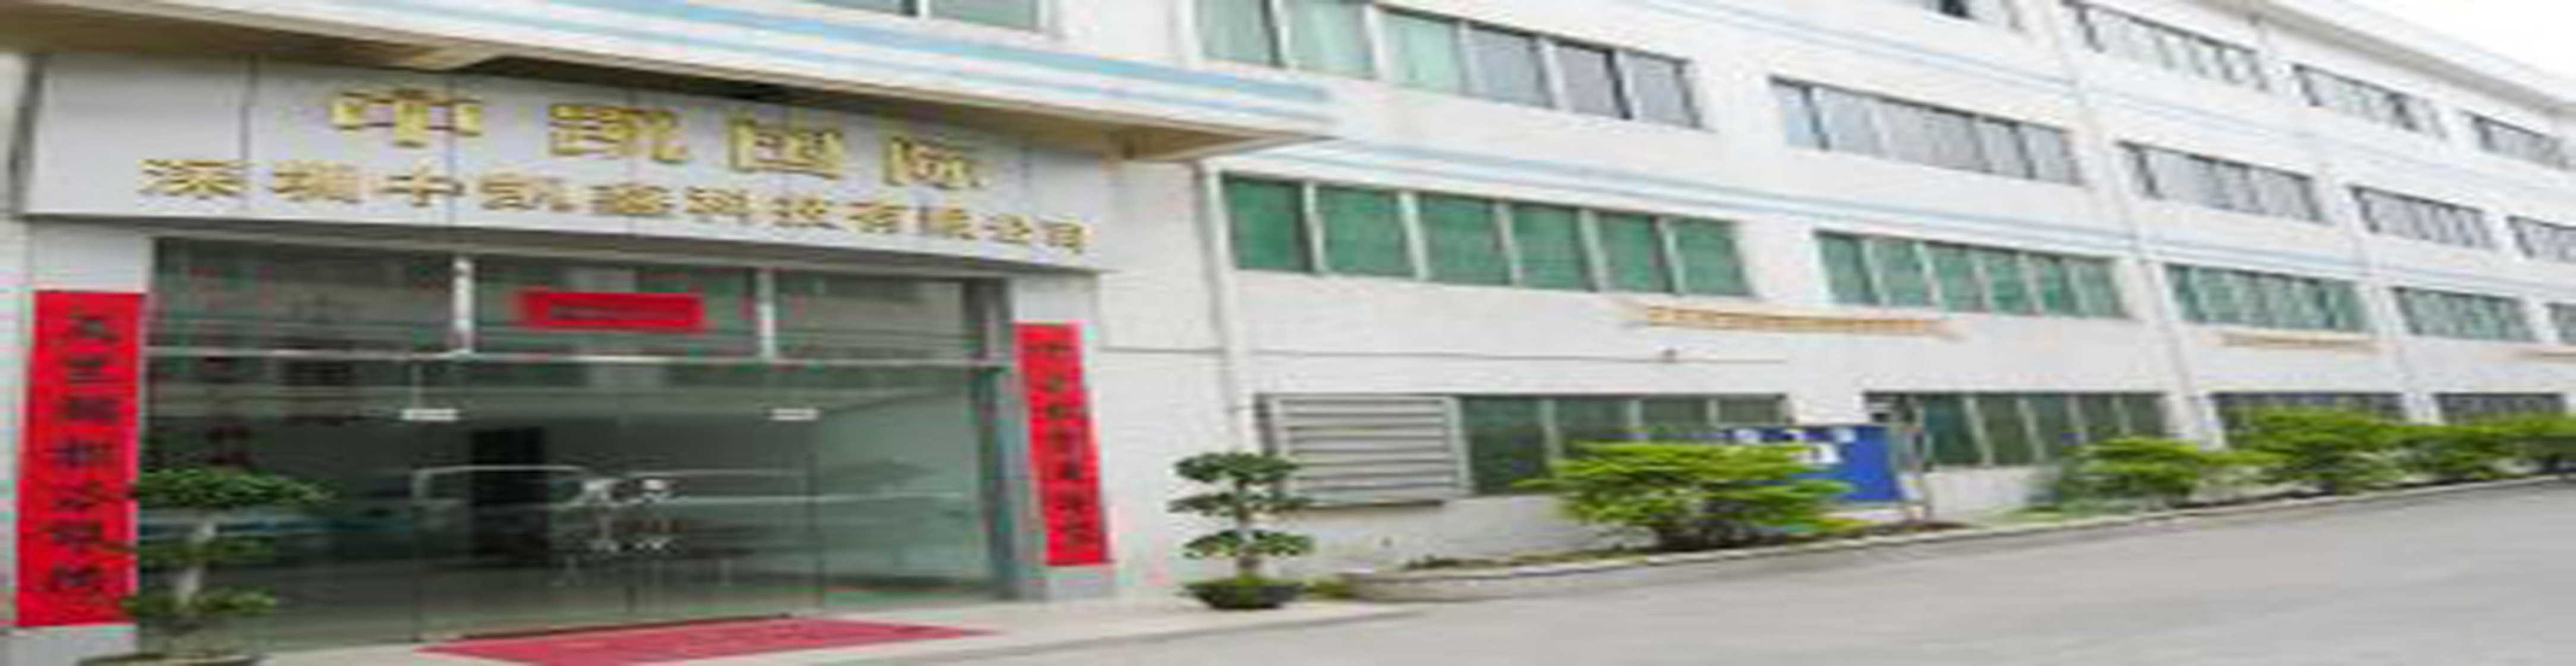 Shenzhen Zhongkaixin Technology Co.,Ltd.